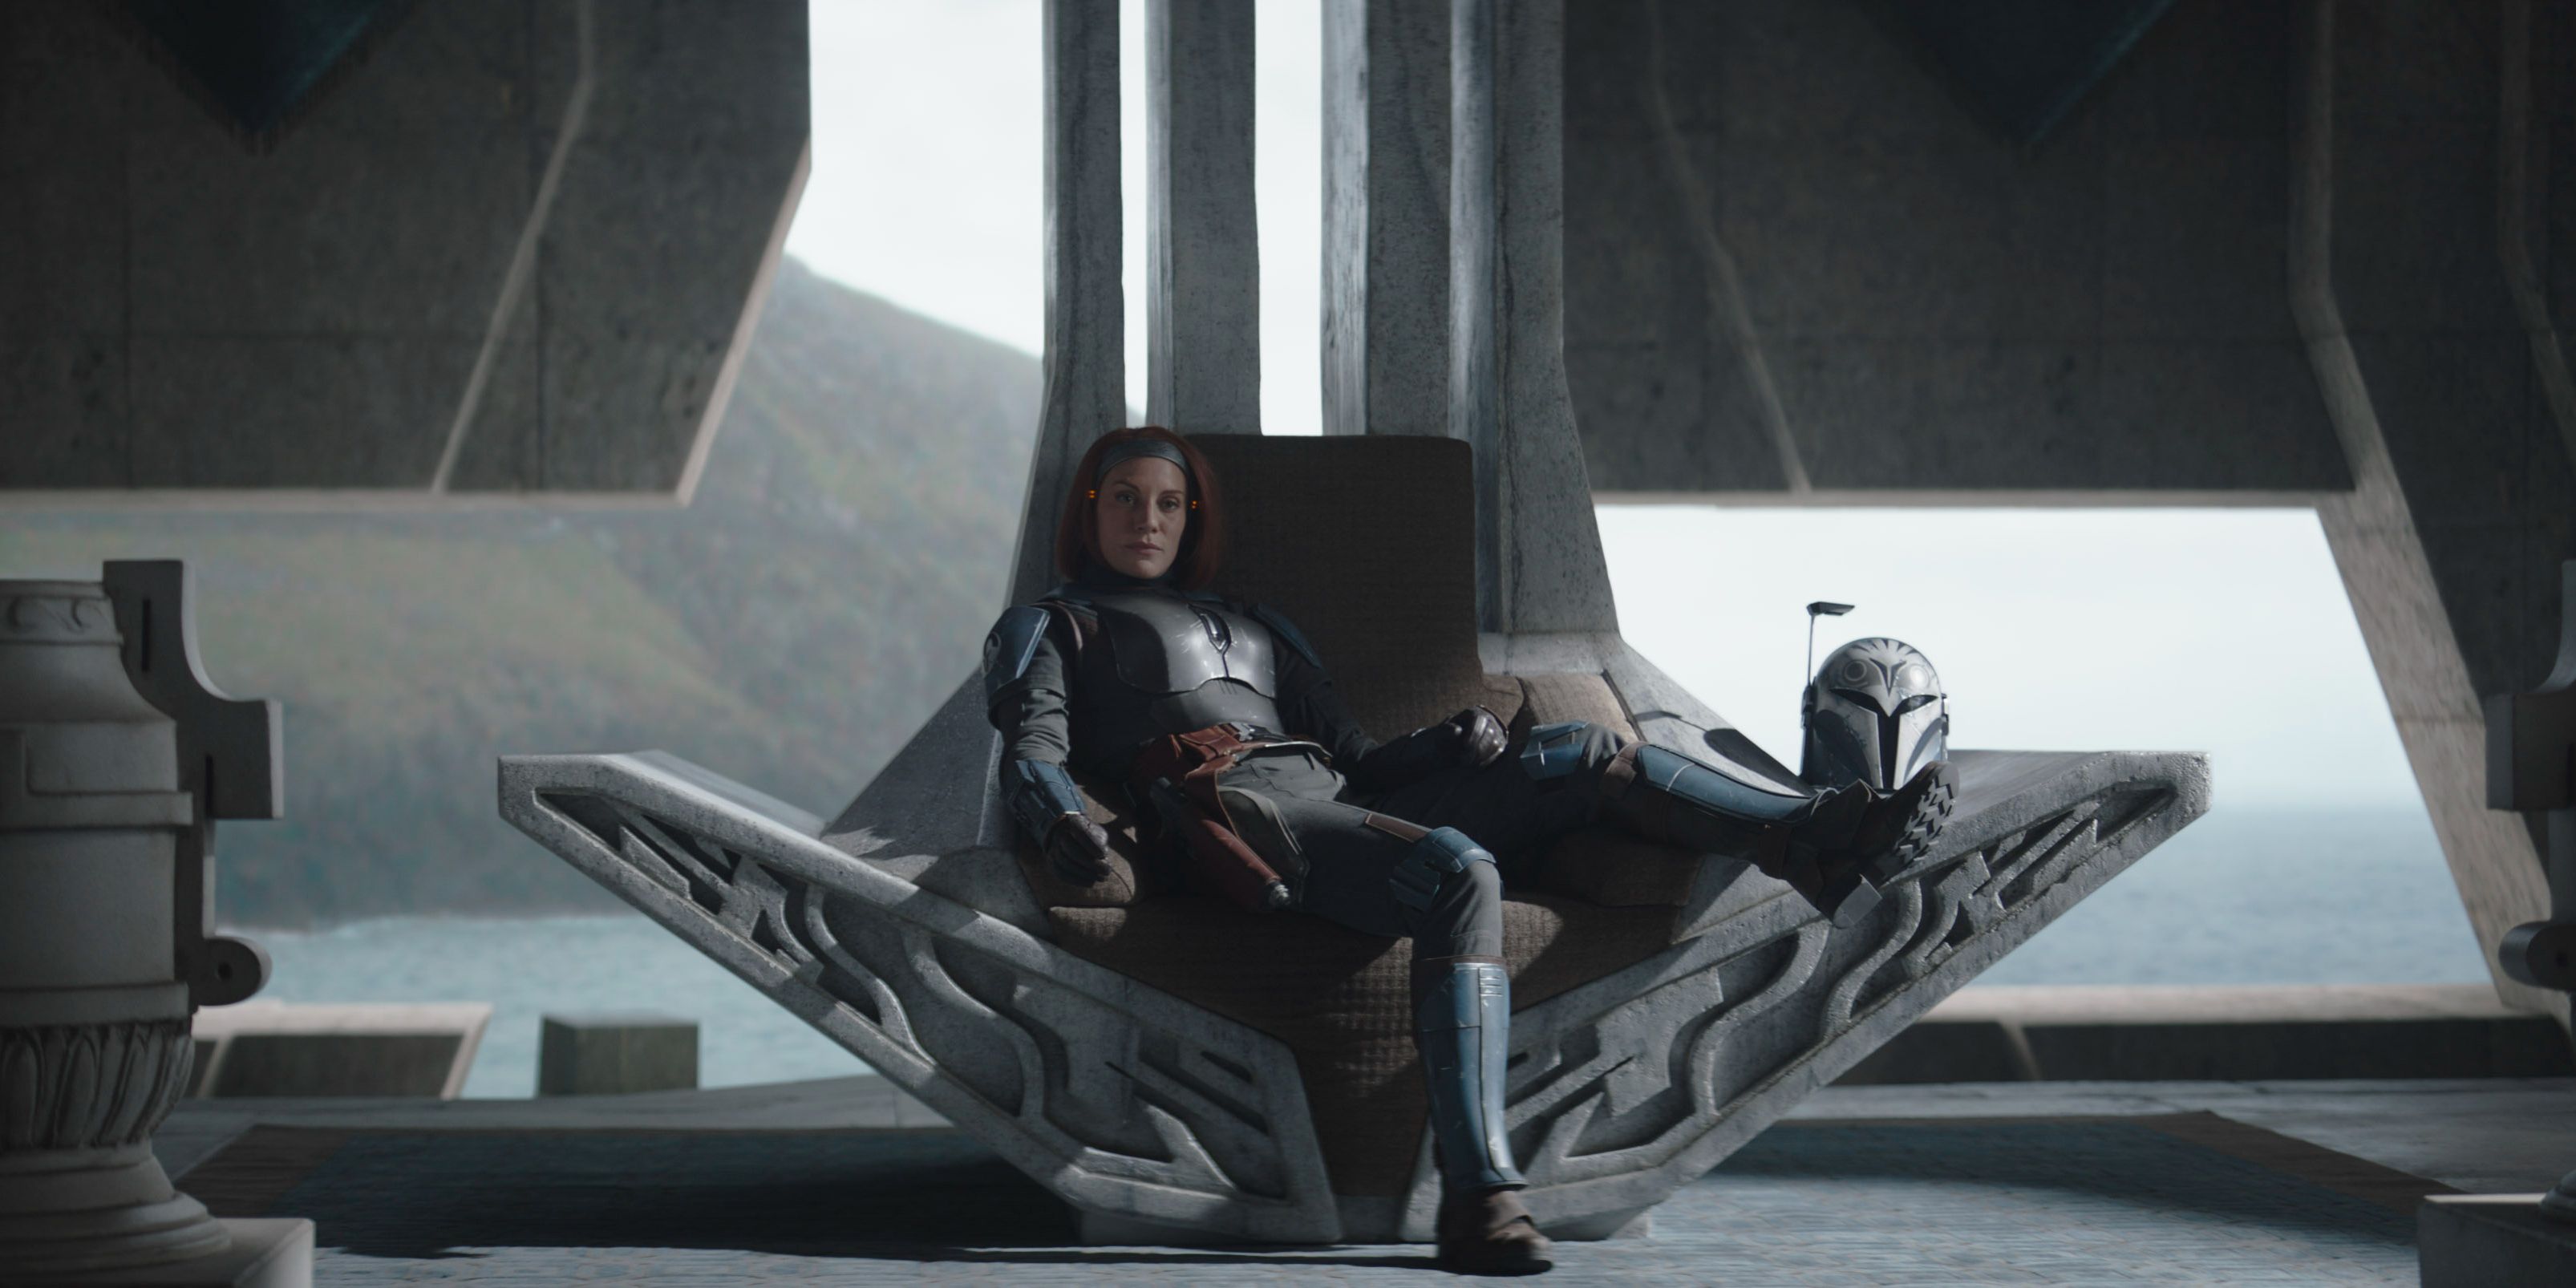 Bo-Katan lounging in her throne in The Mandalorian.